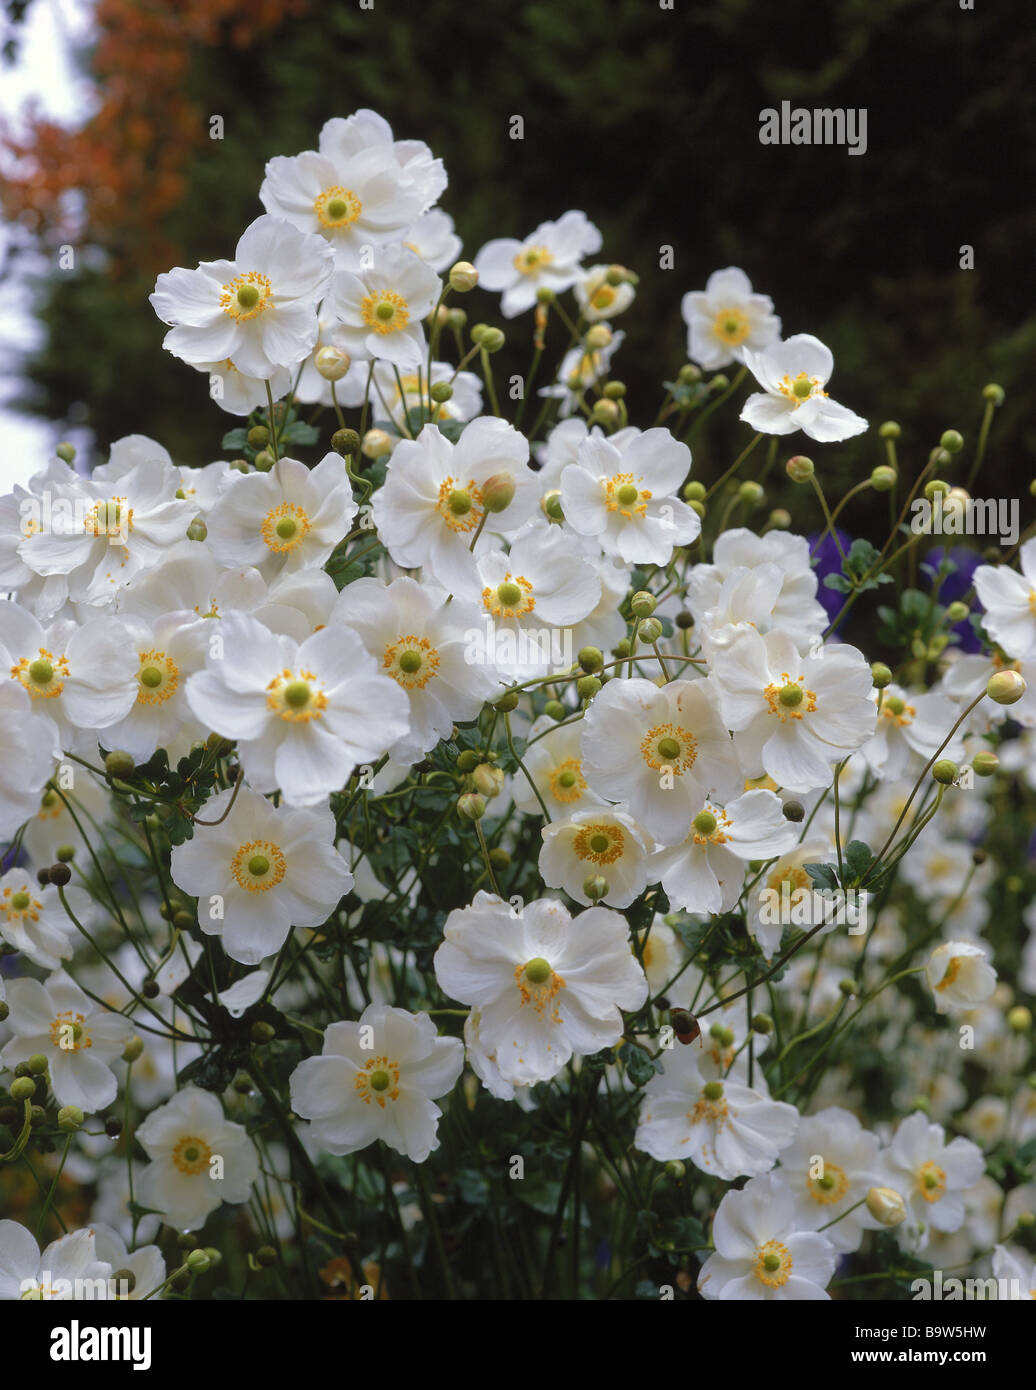 Anemoni, anemoni, bloom, tempo di fioritura, dettaglio, buttercup familiy, autunno anemoni, ibrida japonica, bianco Foto Stock